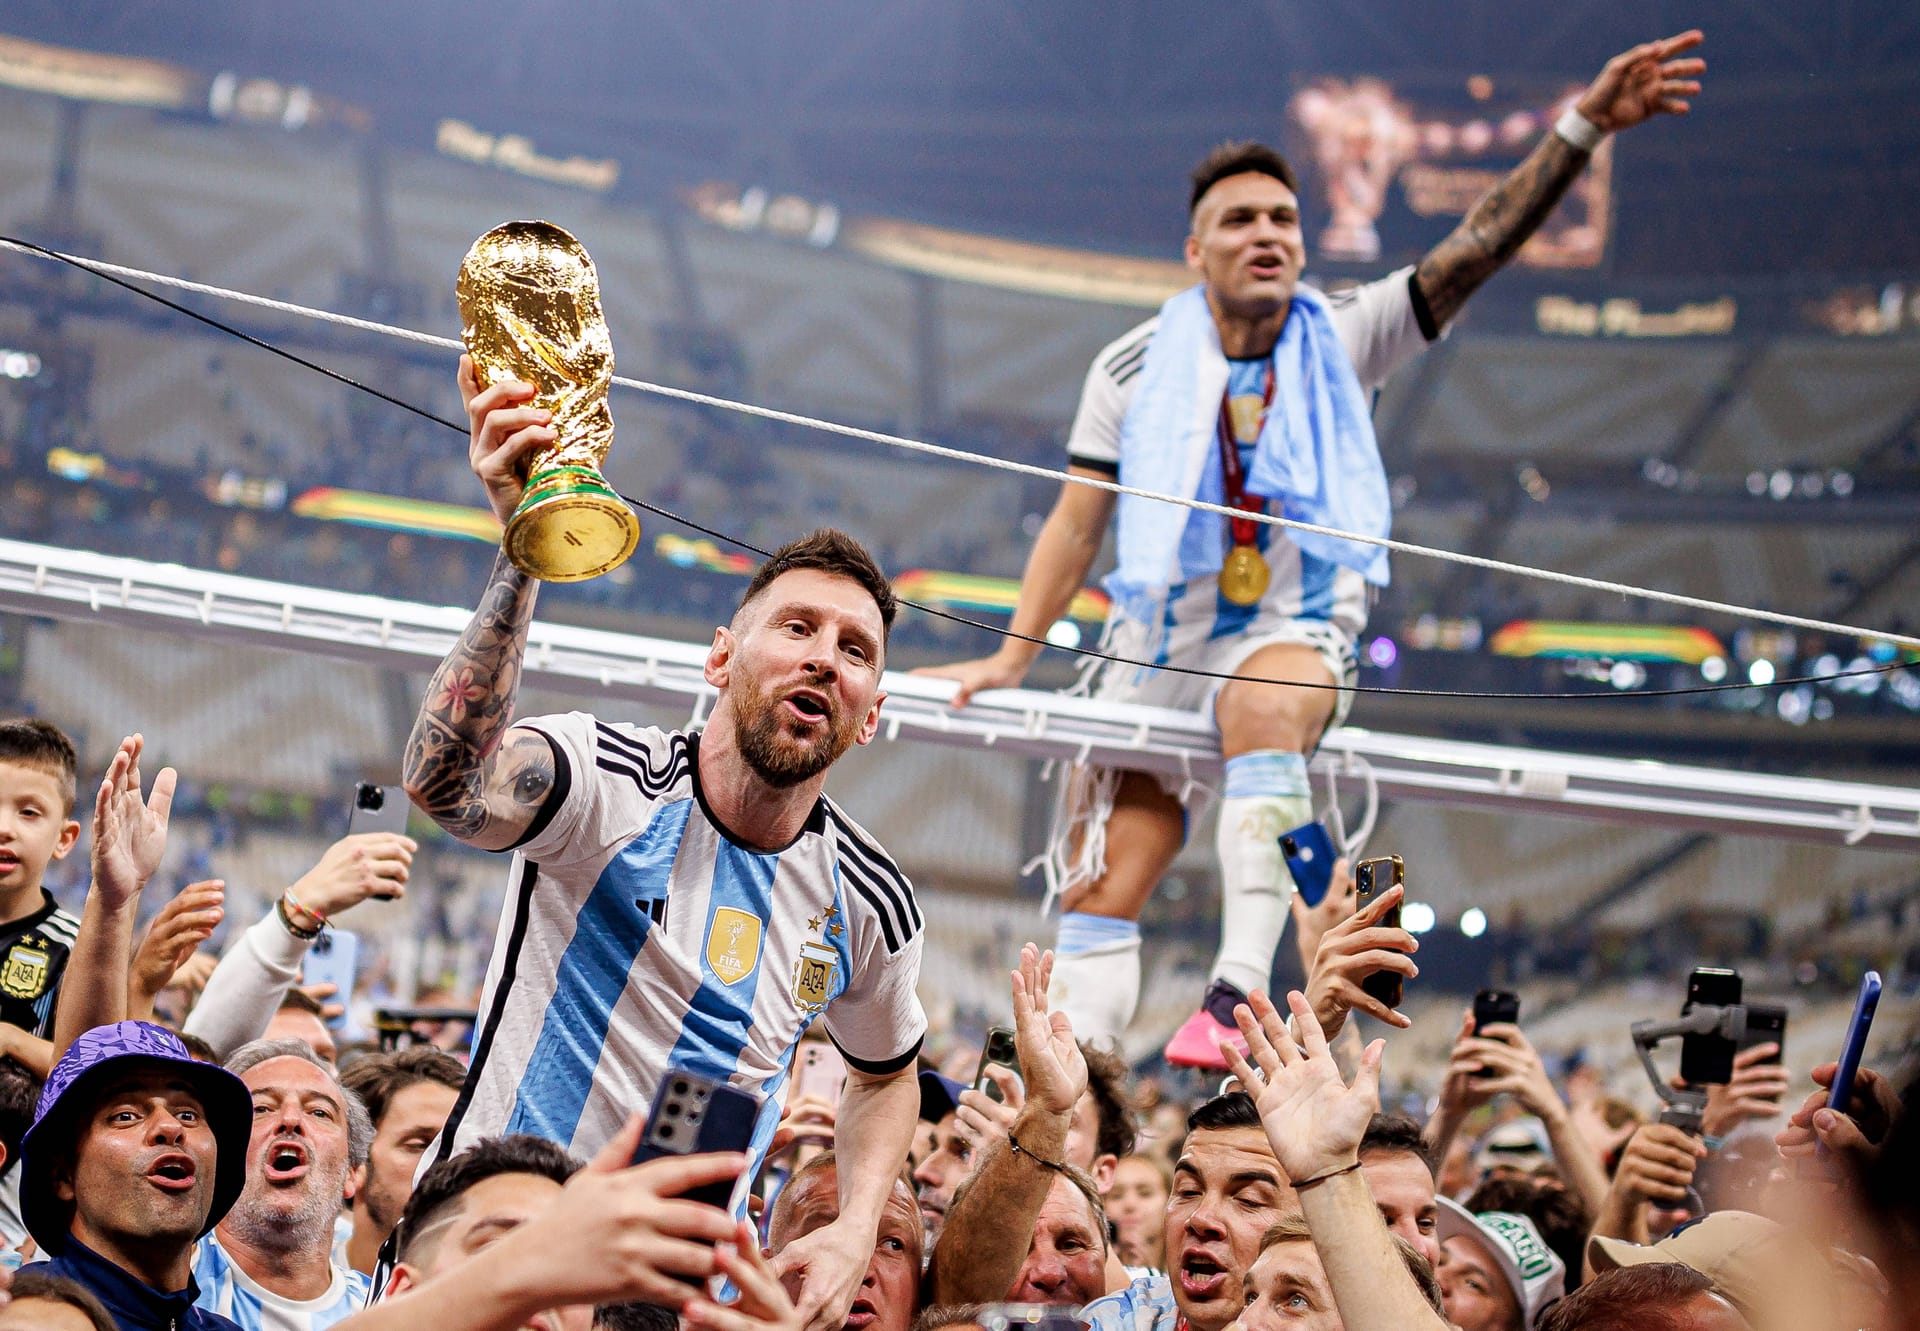 Es war die Krönung seiner unglaublichen Karriere: Lionel Messi hat Argentinien zum WM-Titel getragen. Mit zehn direkten Torbeteiligungen. Mit faszinierenden Geistesblitzen. Mit gleich zwei Treffern im vielleicht besten Endspiel, das die Fußball-WM je erlebt hat. Damit tritt "La Pulga", der Floh, den entscheidenden Schritt heraus aus dem Schatten Diego Maradonas. Und wie sich die Bilder schlussendlich doch glichen: Wie 1986 Maradona, trugen die argentinischen Fans nun Messi mit dem WM-Pokal in den Händen auf ihren Schultern durch das weite Stadionrund.